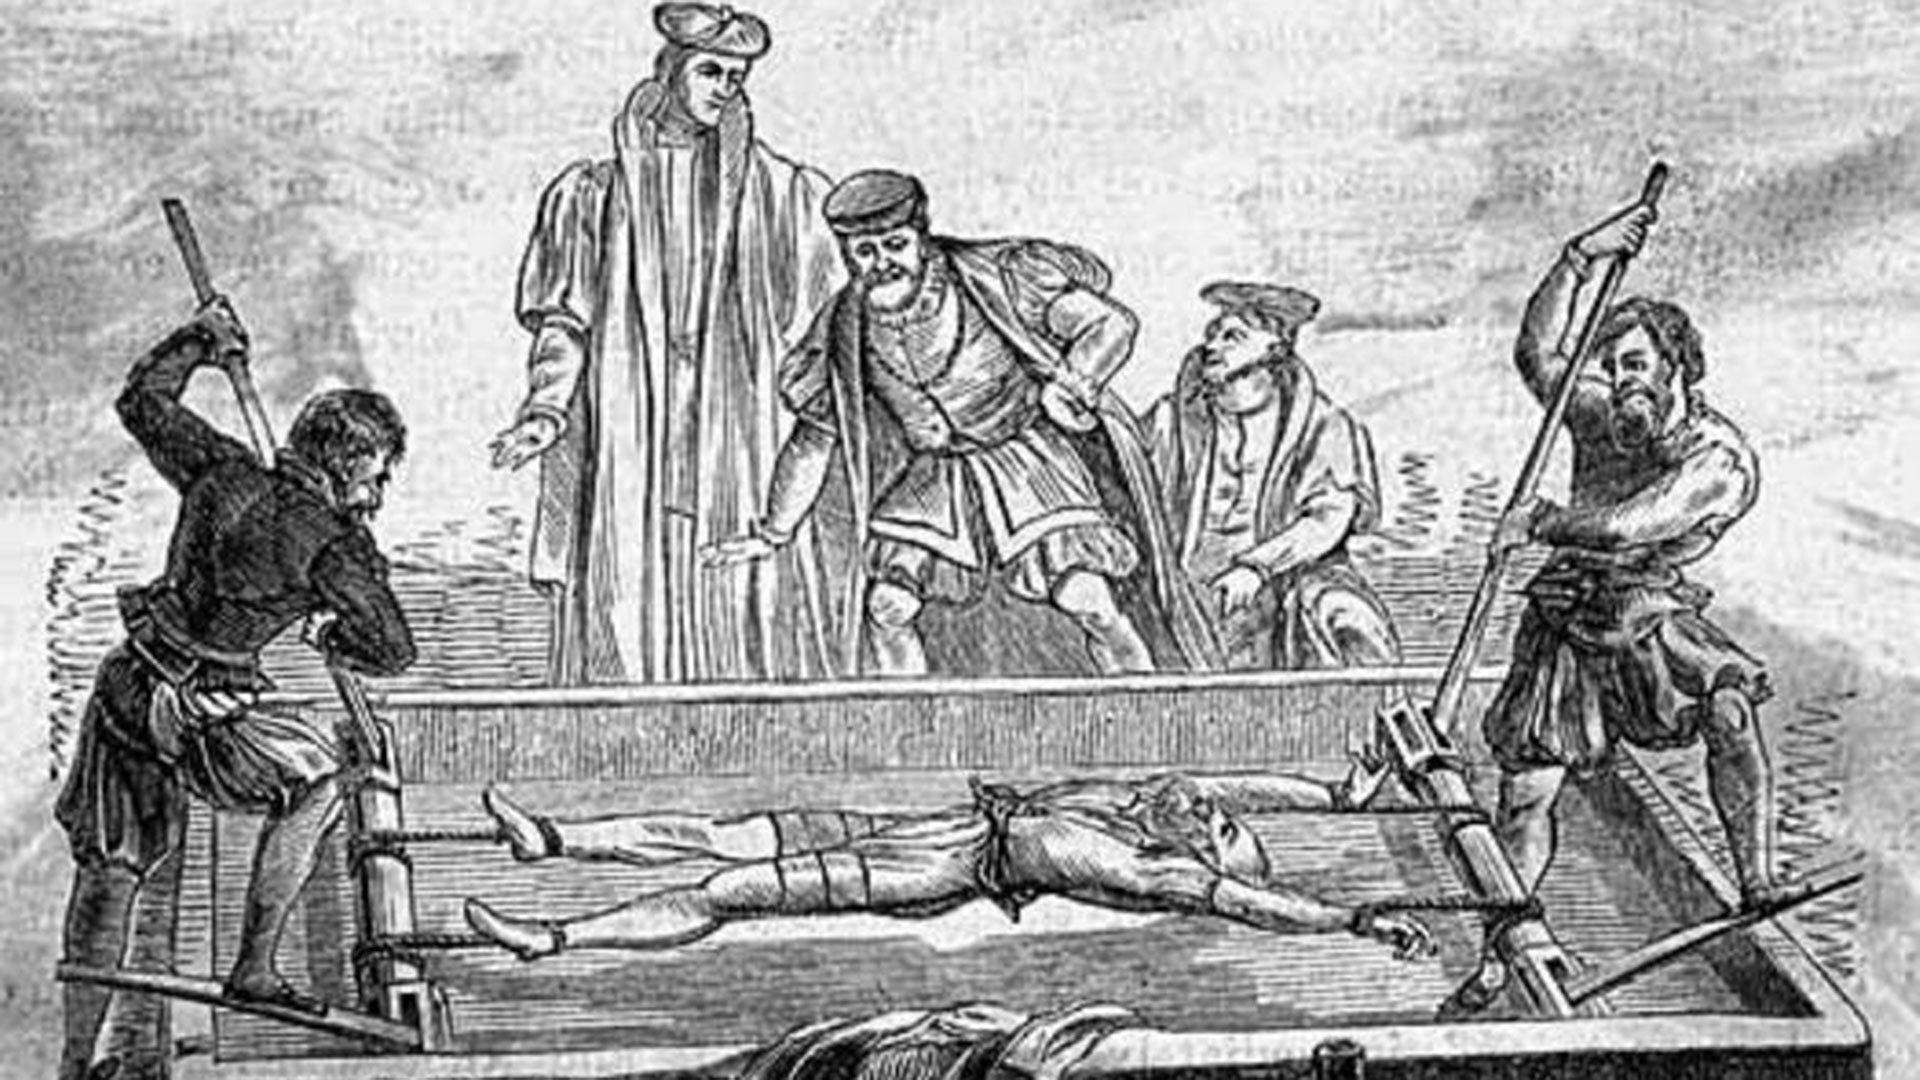 Uno de los tantos métodos de tortura que implementaba la Inquisición, institución que prohibió "El Lazarillo de Tormes" por su contenido anti-clerical.